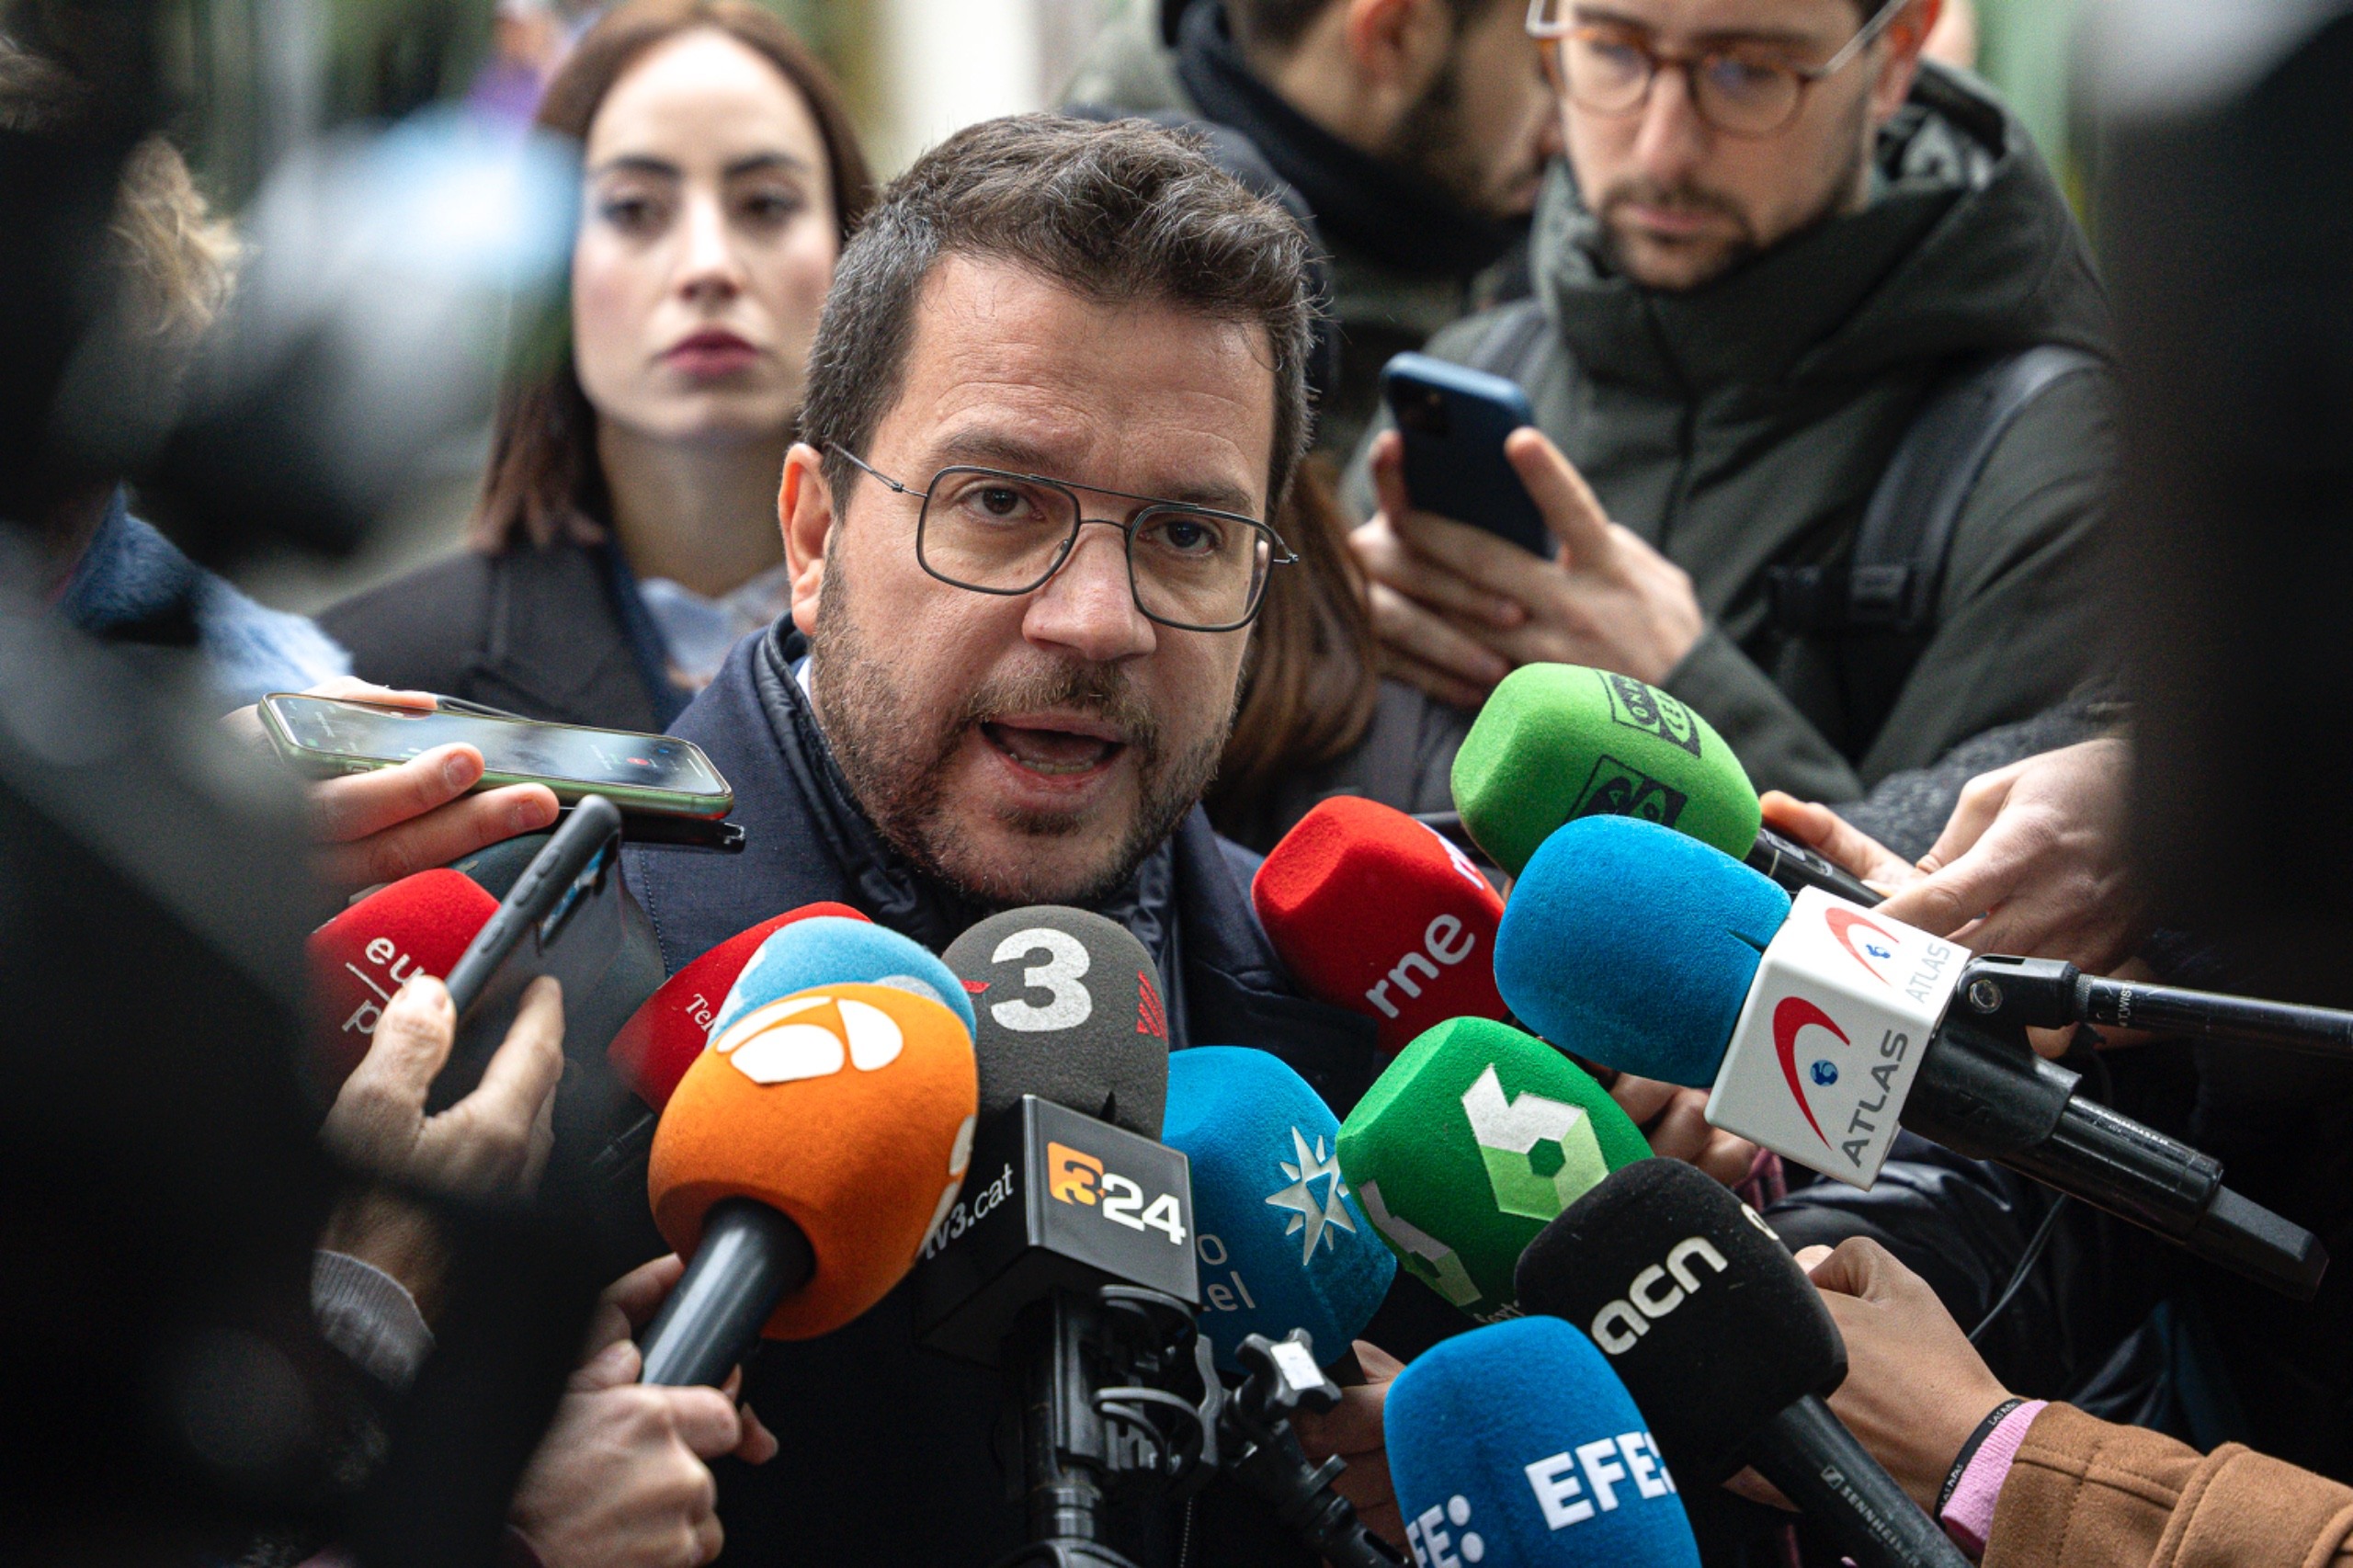 Pere Aragonès al juez: "El CNI me ha espiado y el Gobierno tiene la obligación de desclasificarlo"